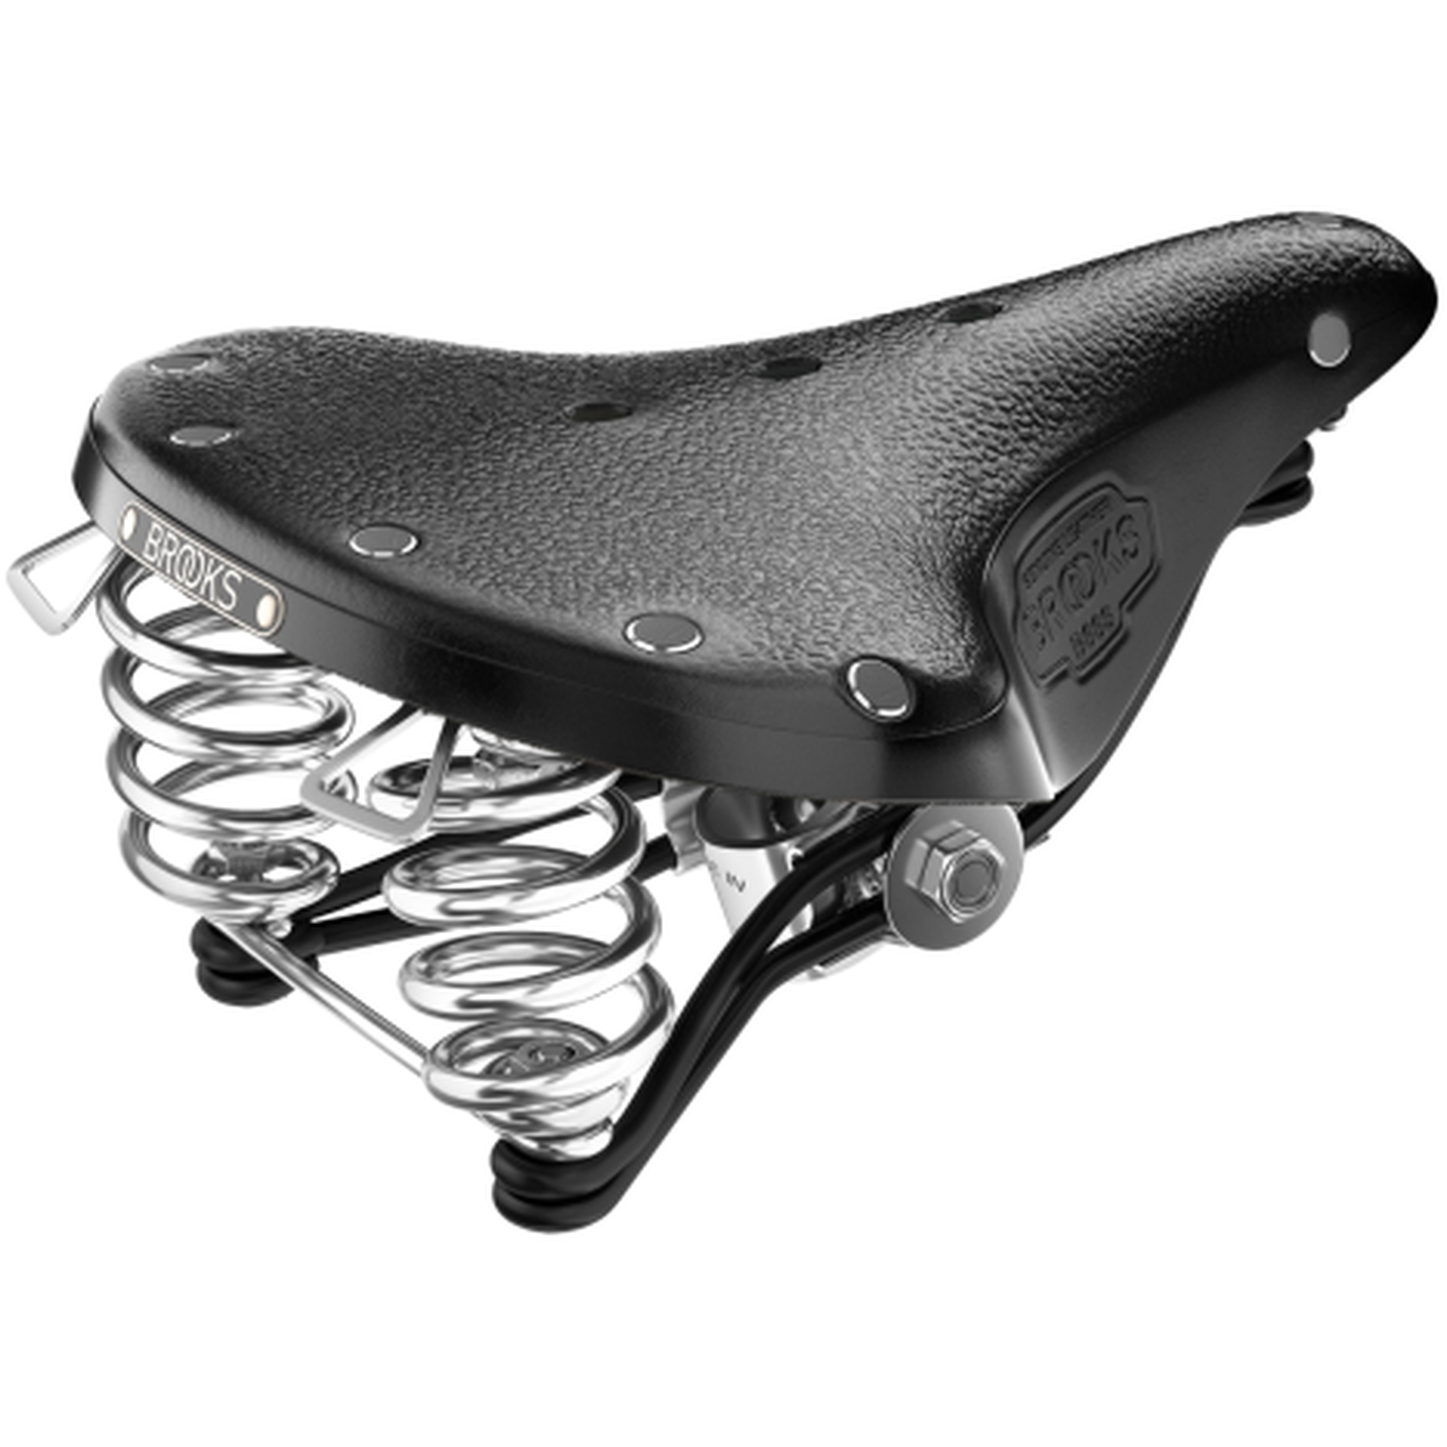 Image of Brooks B66 Short Bend Leather Saddle - black